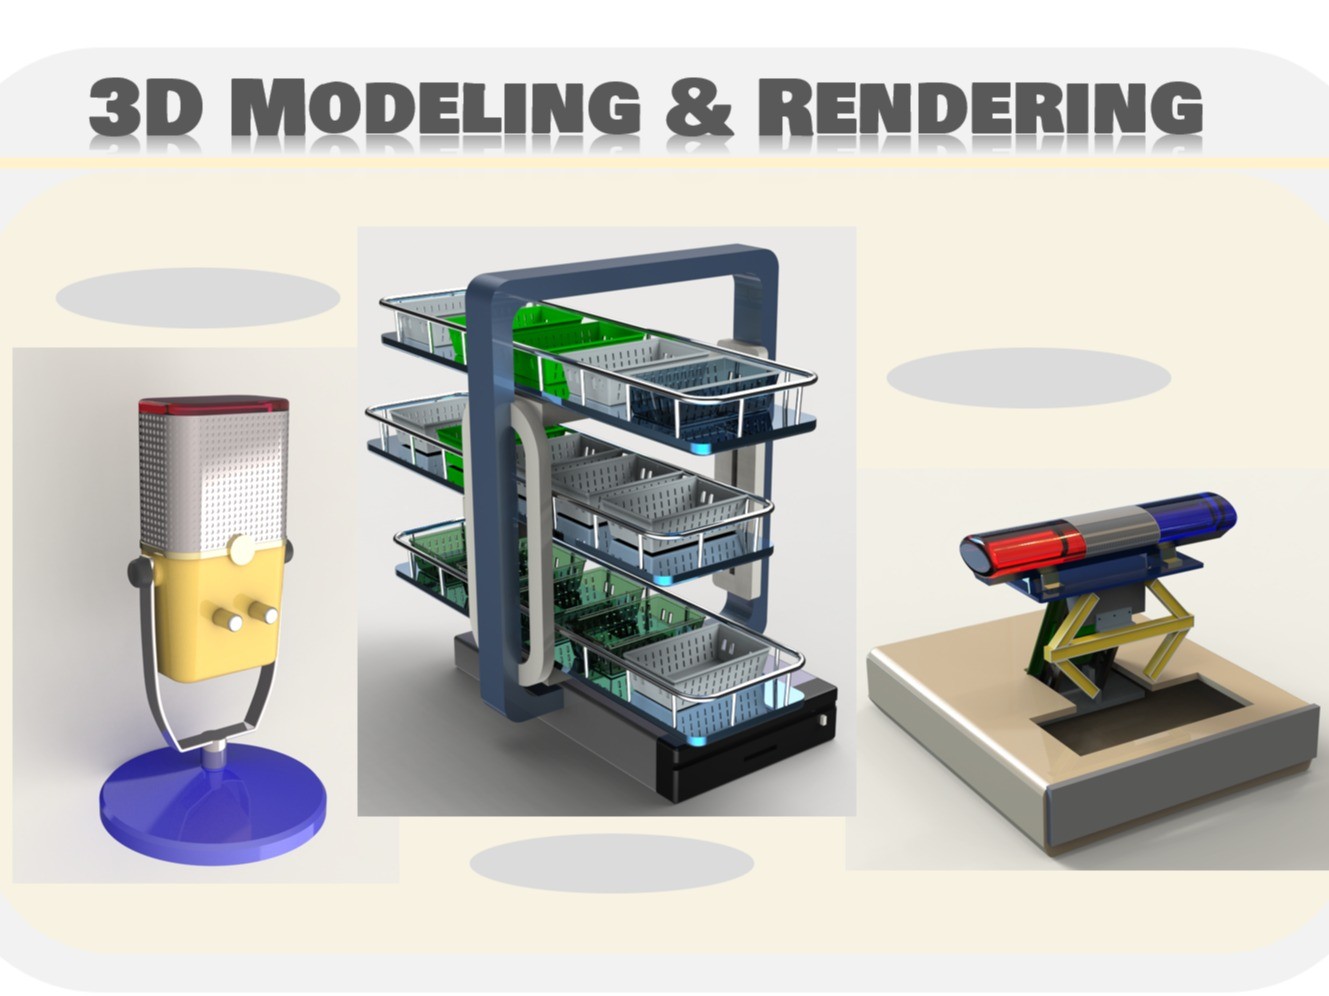 3D 모델링렌더링, 제품 설계, 패키지 디자인,특허도면